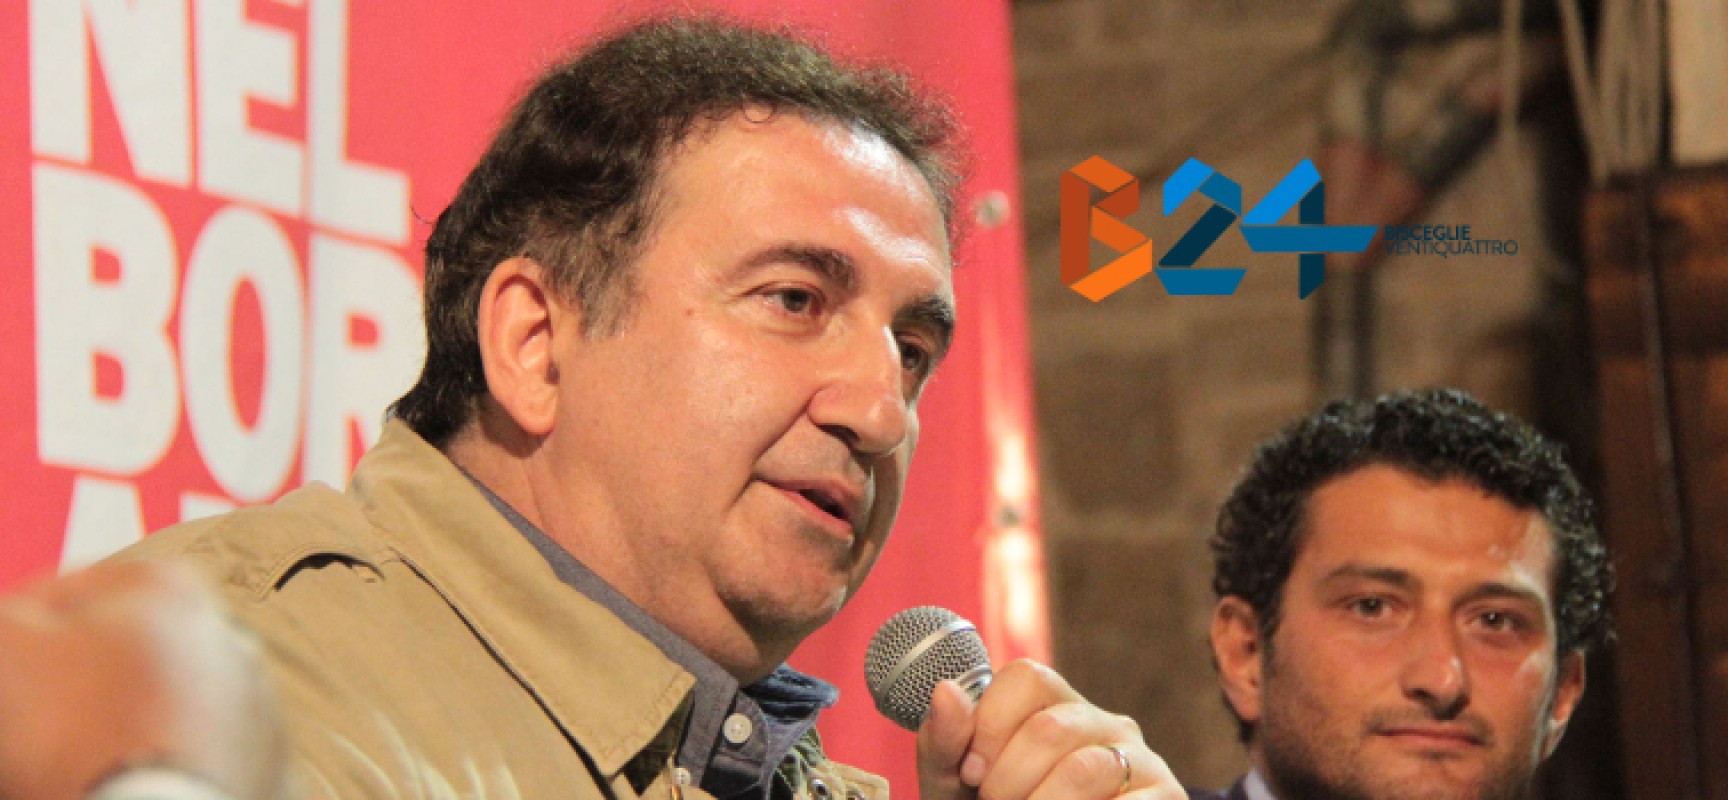 Rotary, il giornalista e conduttore Roberto Giacobbo a Bisceglie per svelare “La Puglia segreta”